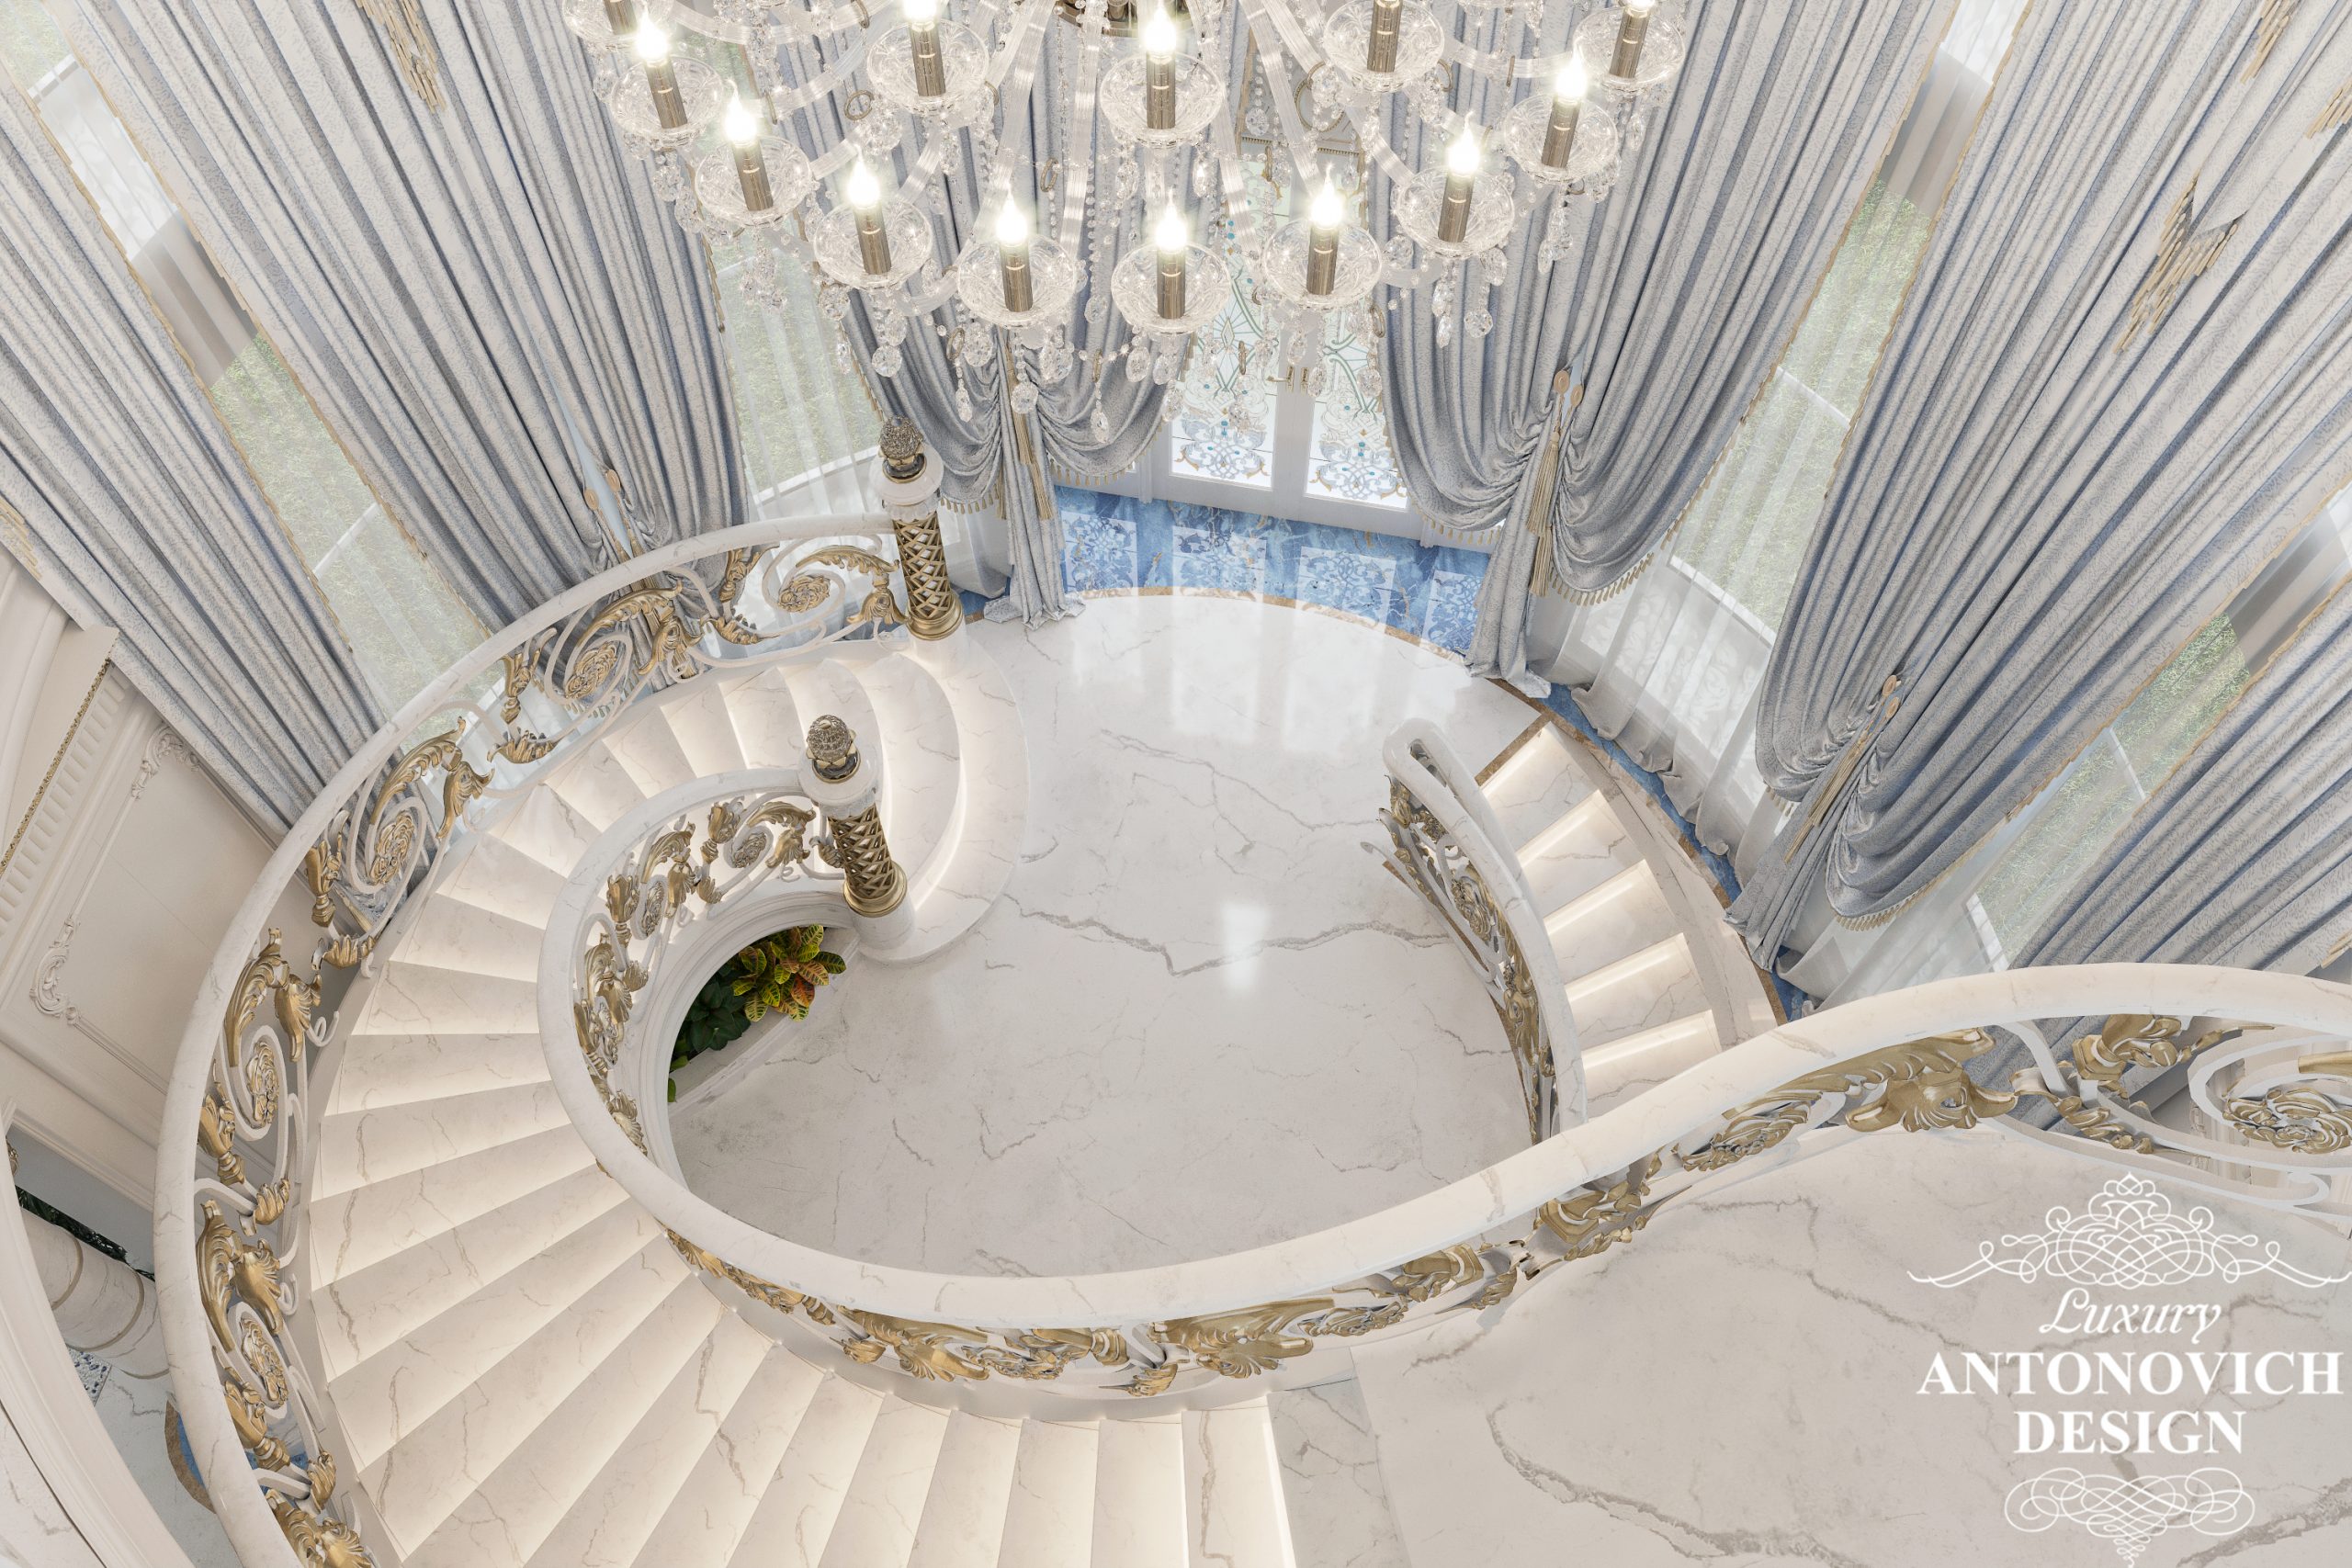 Мармурові сходи з кованими елементами, витонченим декором і позолотою. Проект будинку Україна